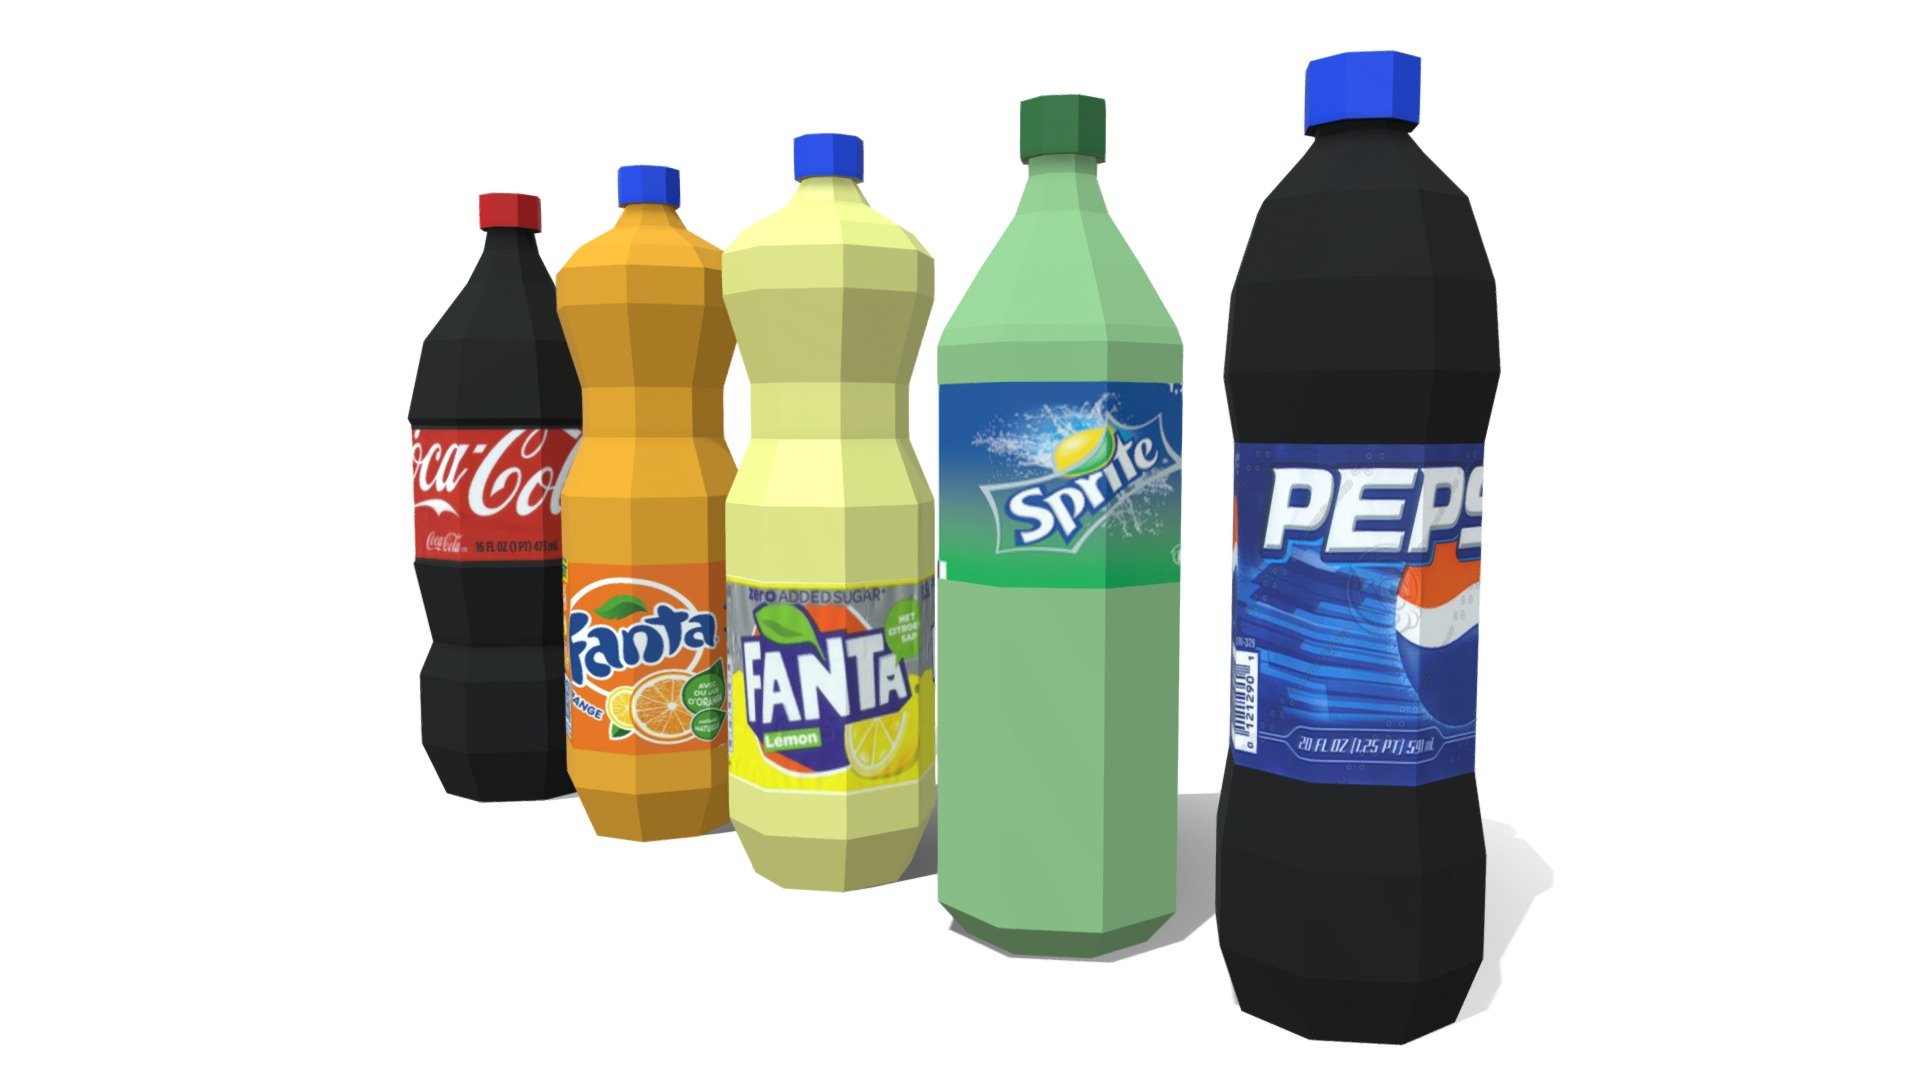 Low Poly Beverages made in Blender 2.93
Cocacola, Fanta orange, Fanta lemon, Sprite, Pepsi
Free download - Low Poly Beverages - Download Free 3D model by amurin 3d model